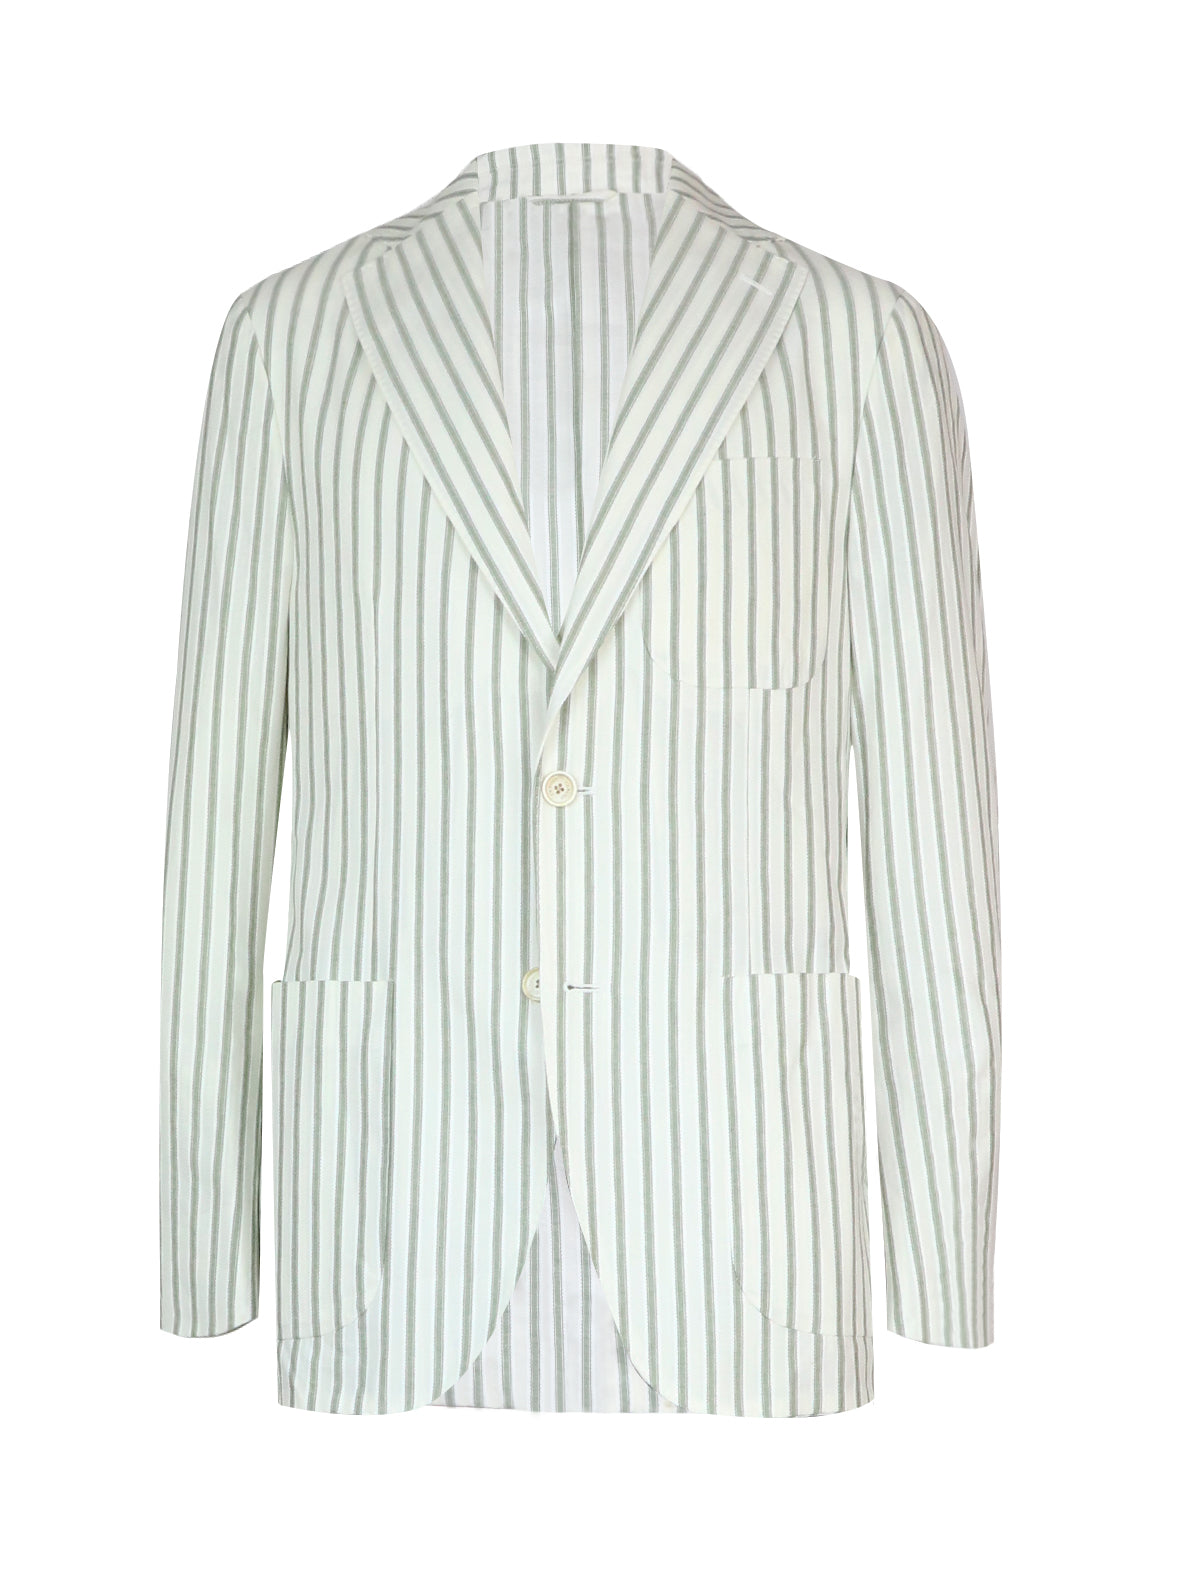 CARUSO Ponza Blazer in White/Green Stripes